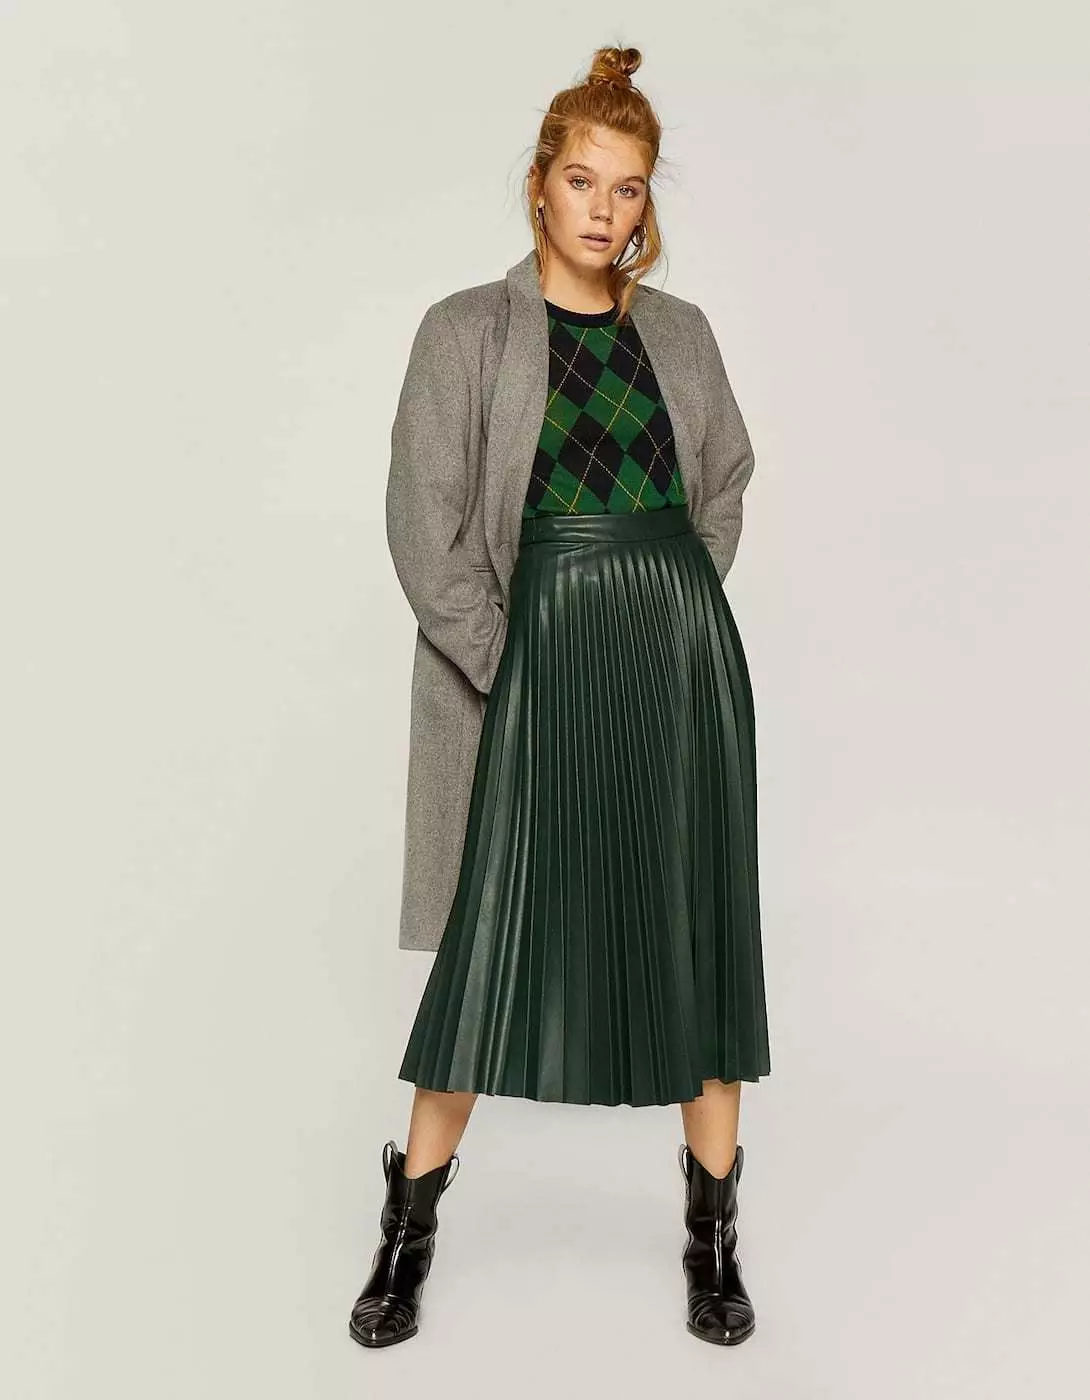 Placs Skirt Kulit: Apa yang perlu dipakai Rok Eco-Piece Pleated? Imej dengan skirt kulit tiruan hitam dan coklat 800_2